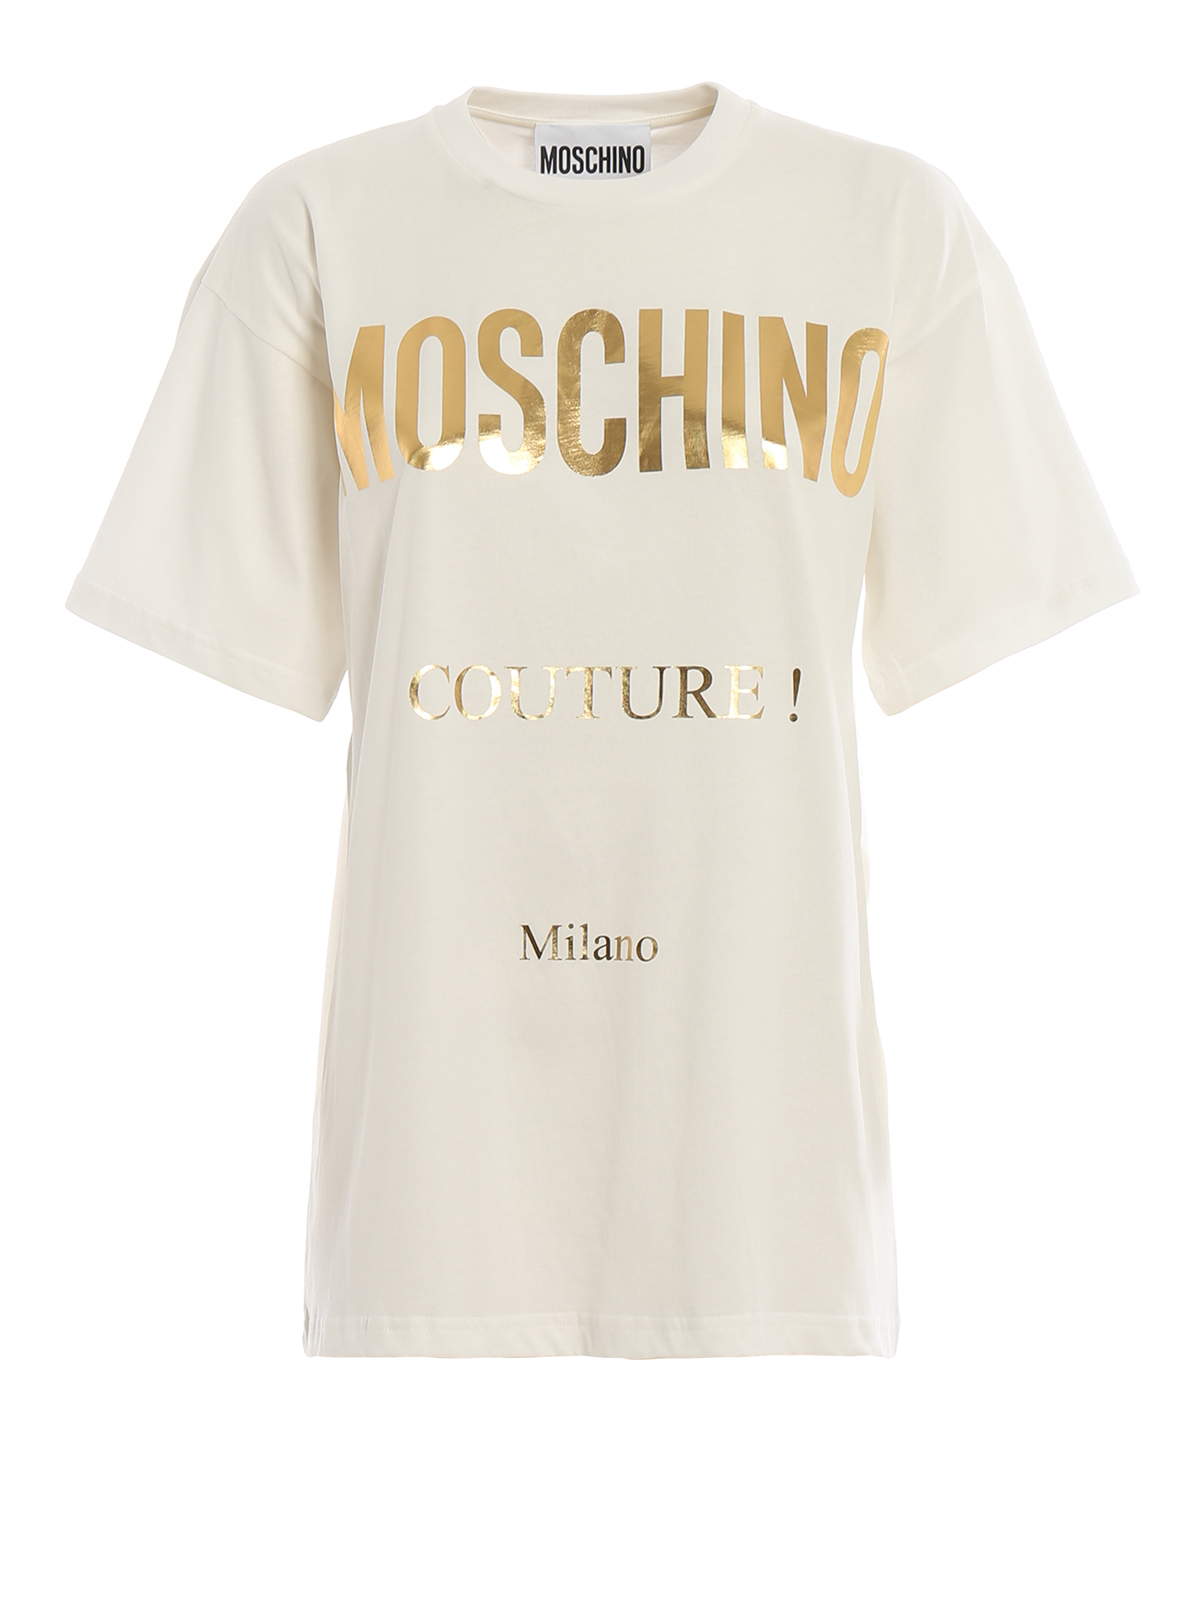 white and gold moschino t shirt